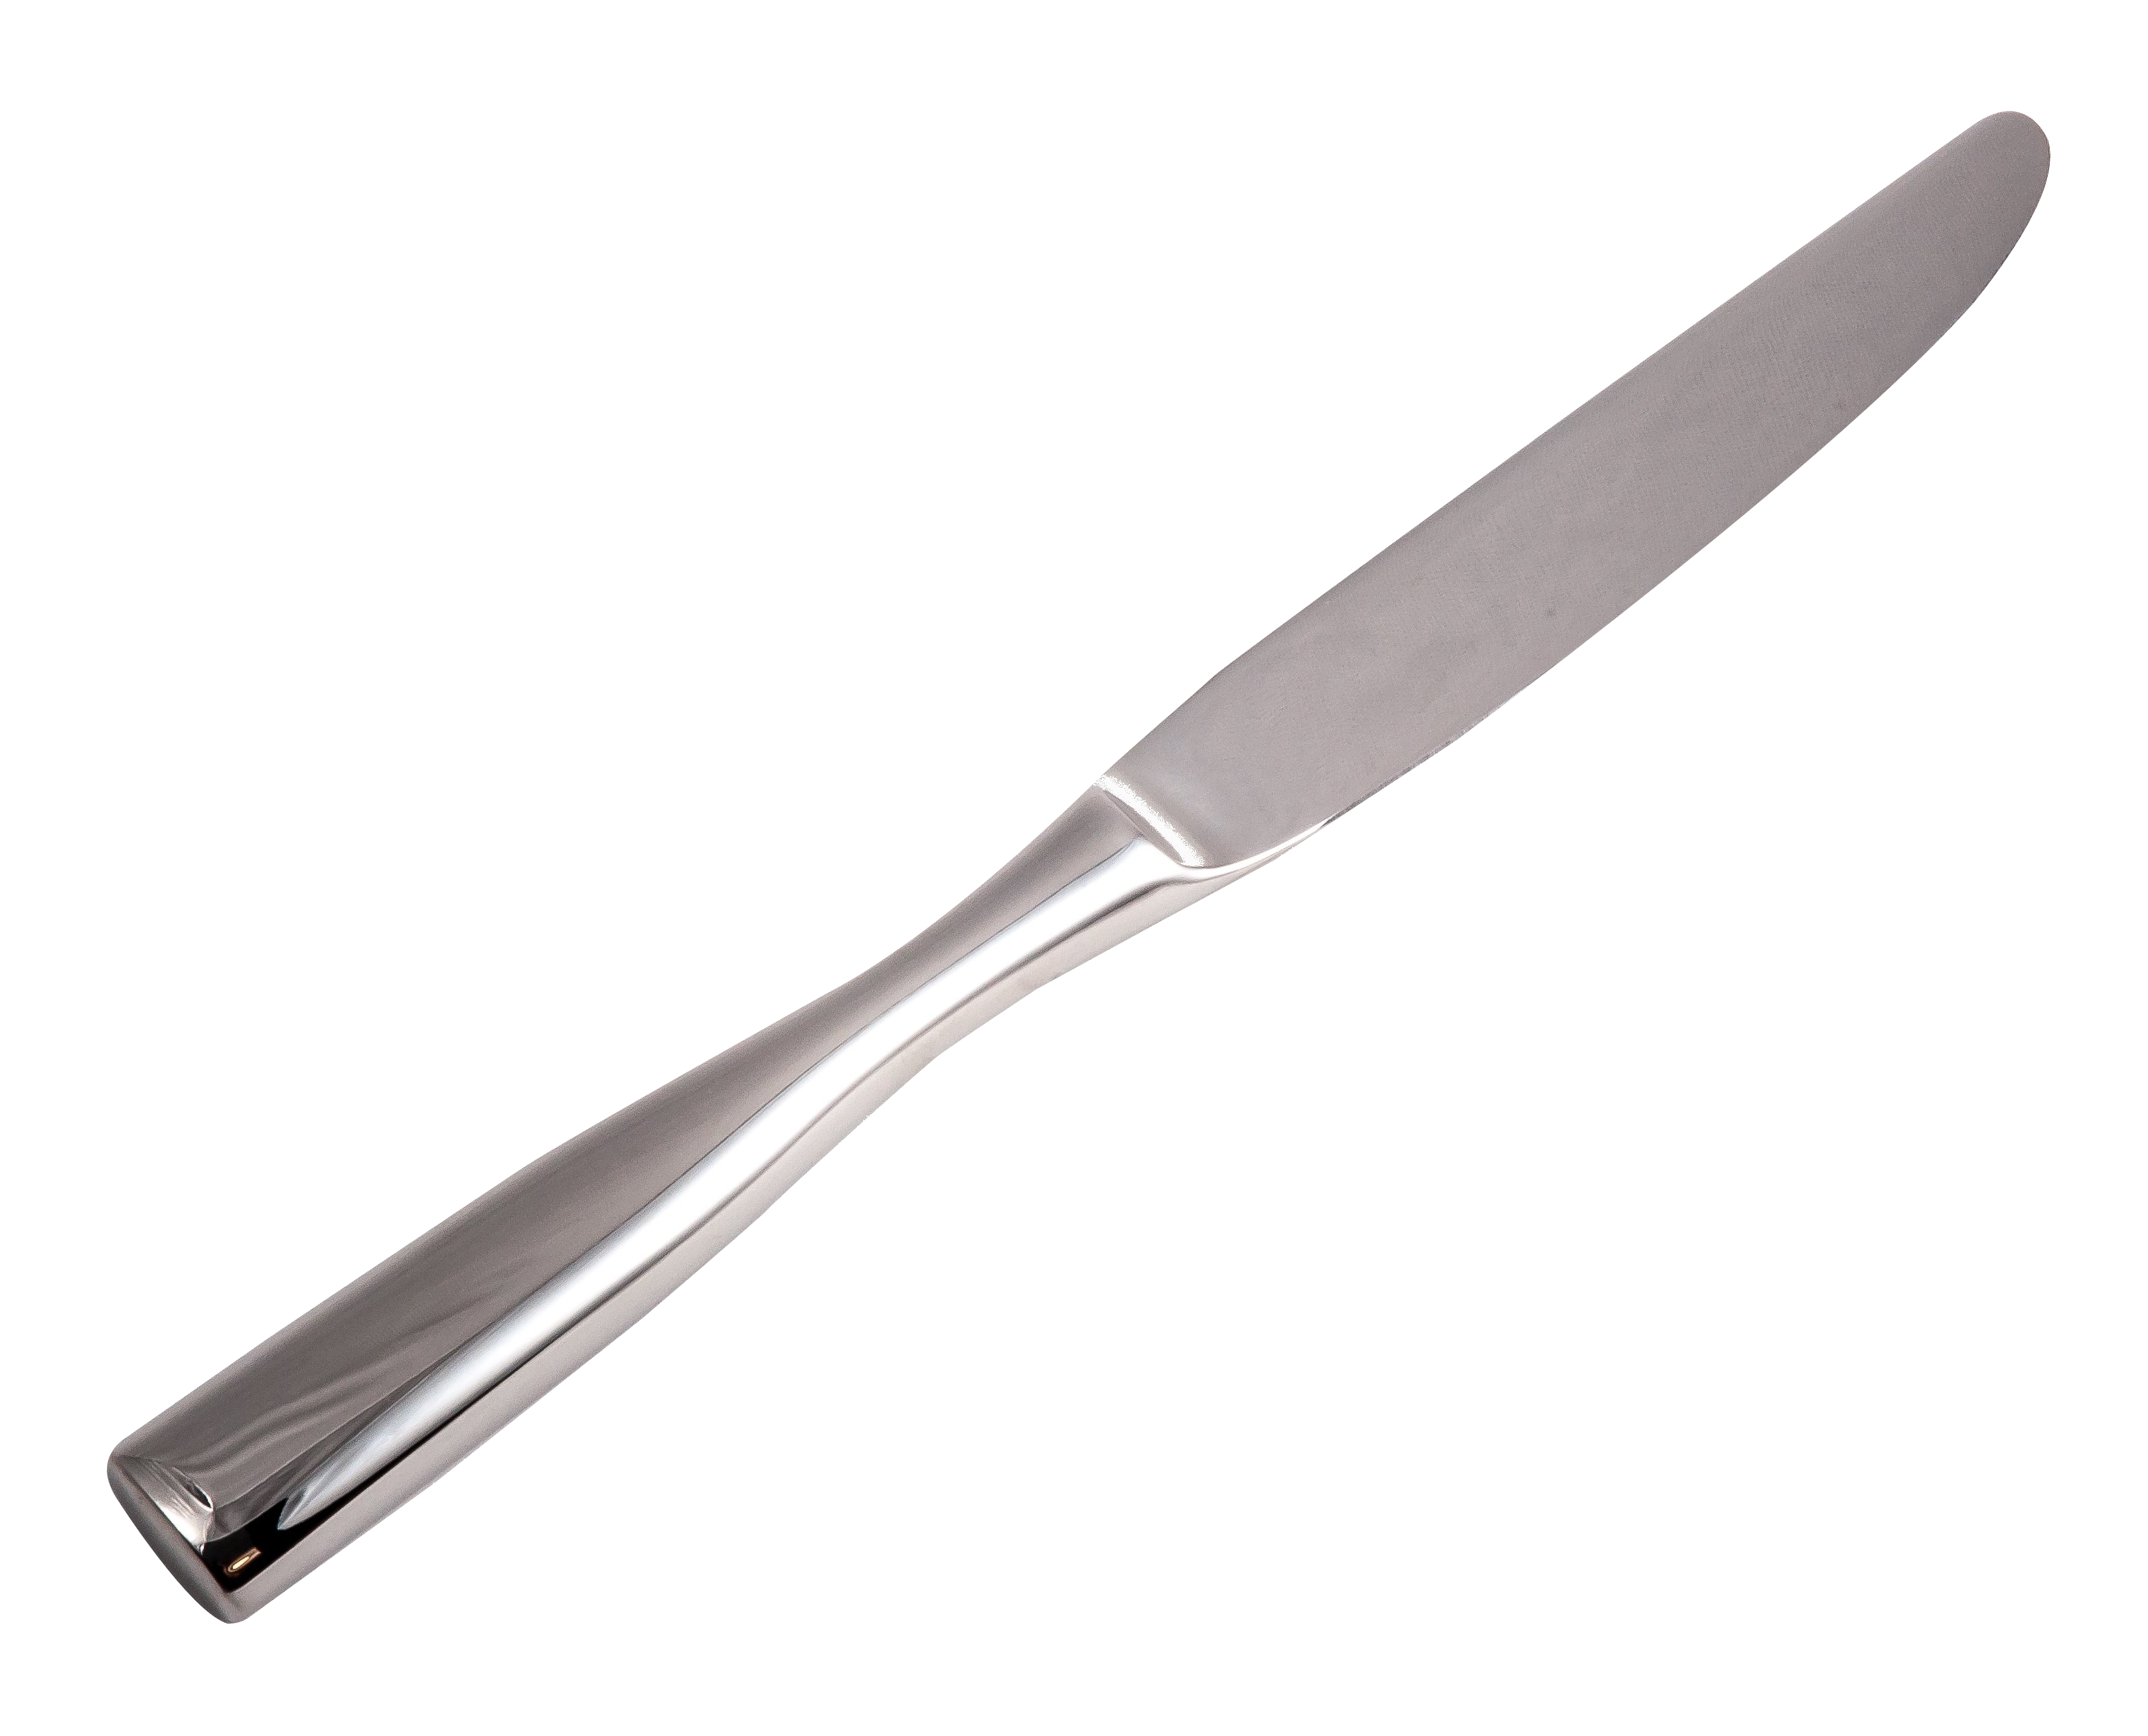 Immagine di PNG del coltello del burro dargento